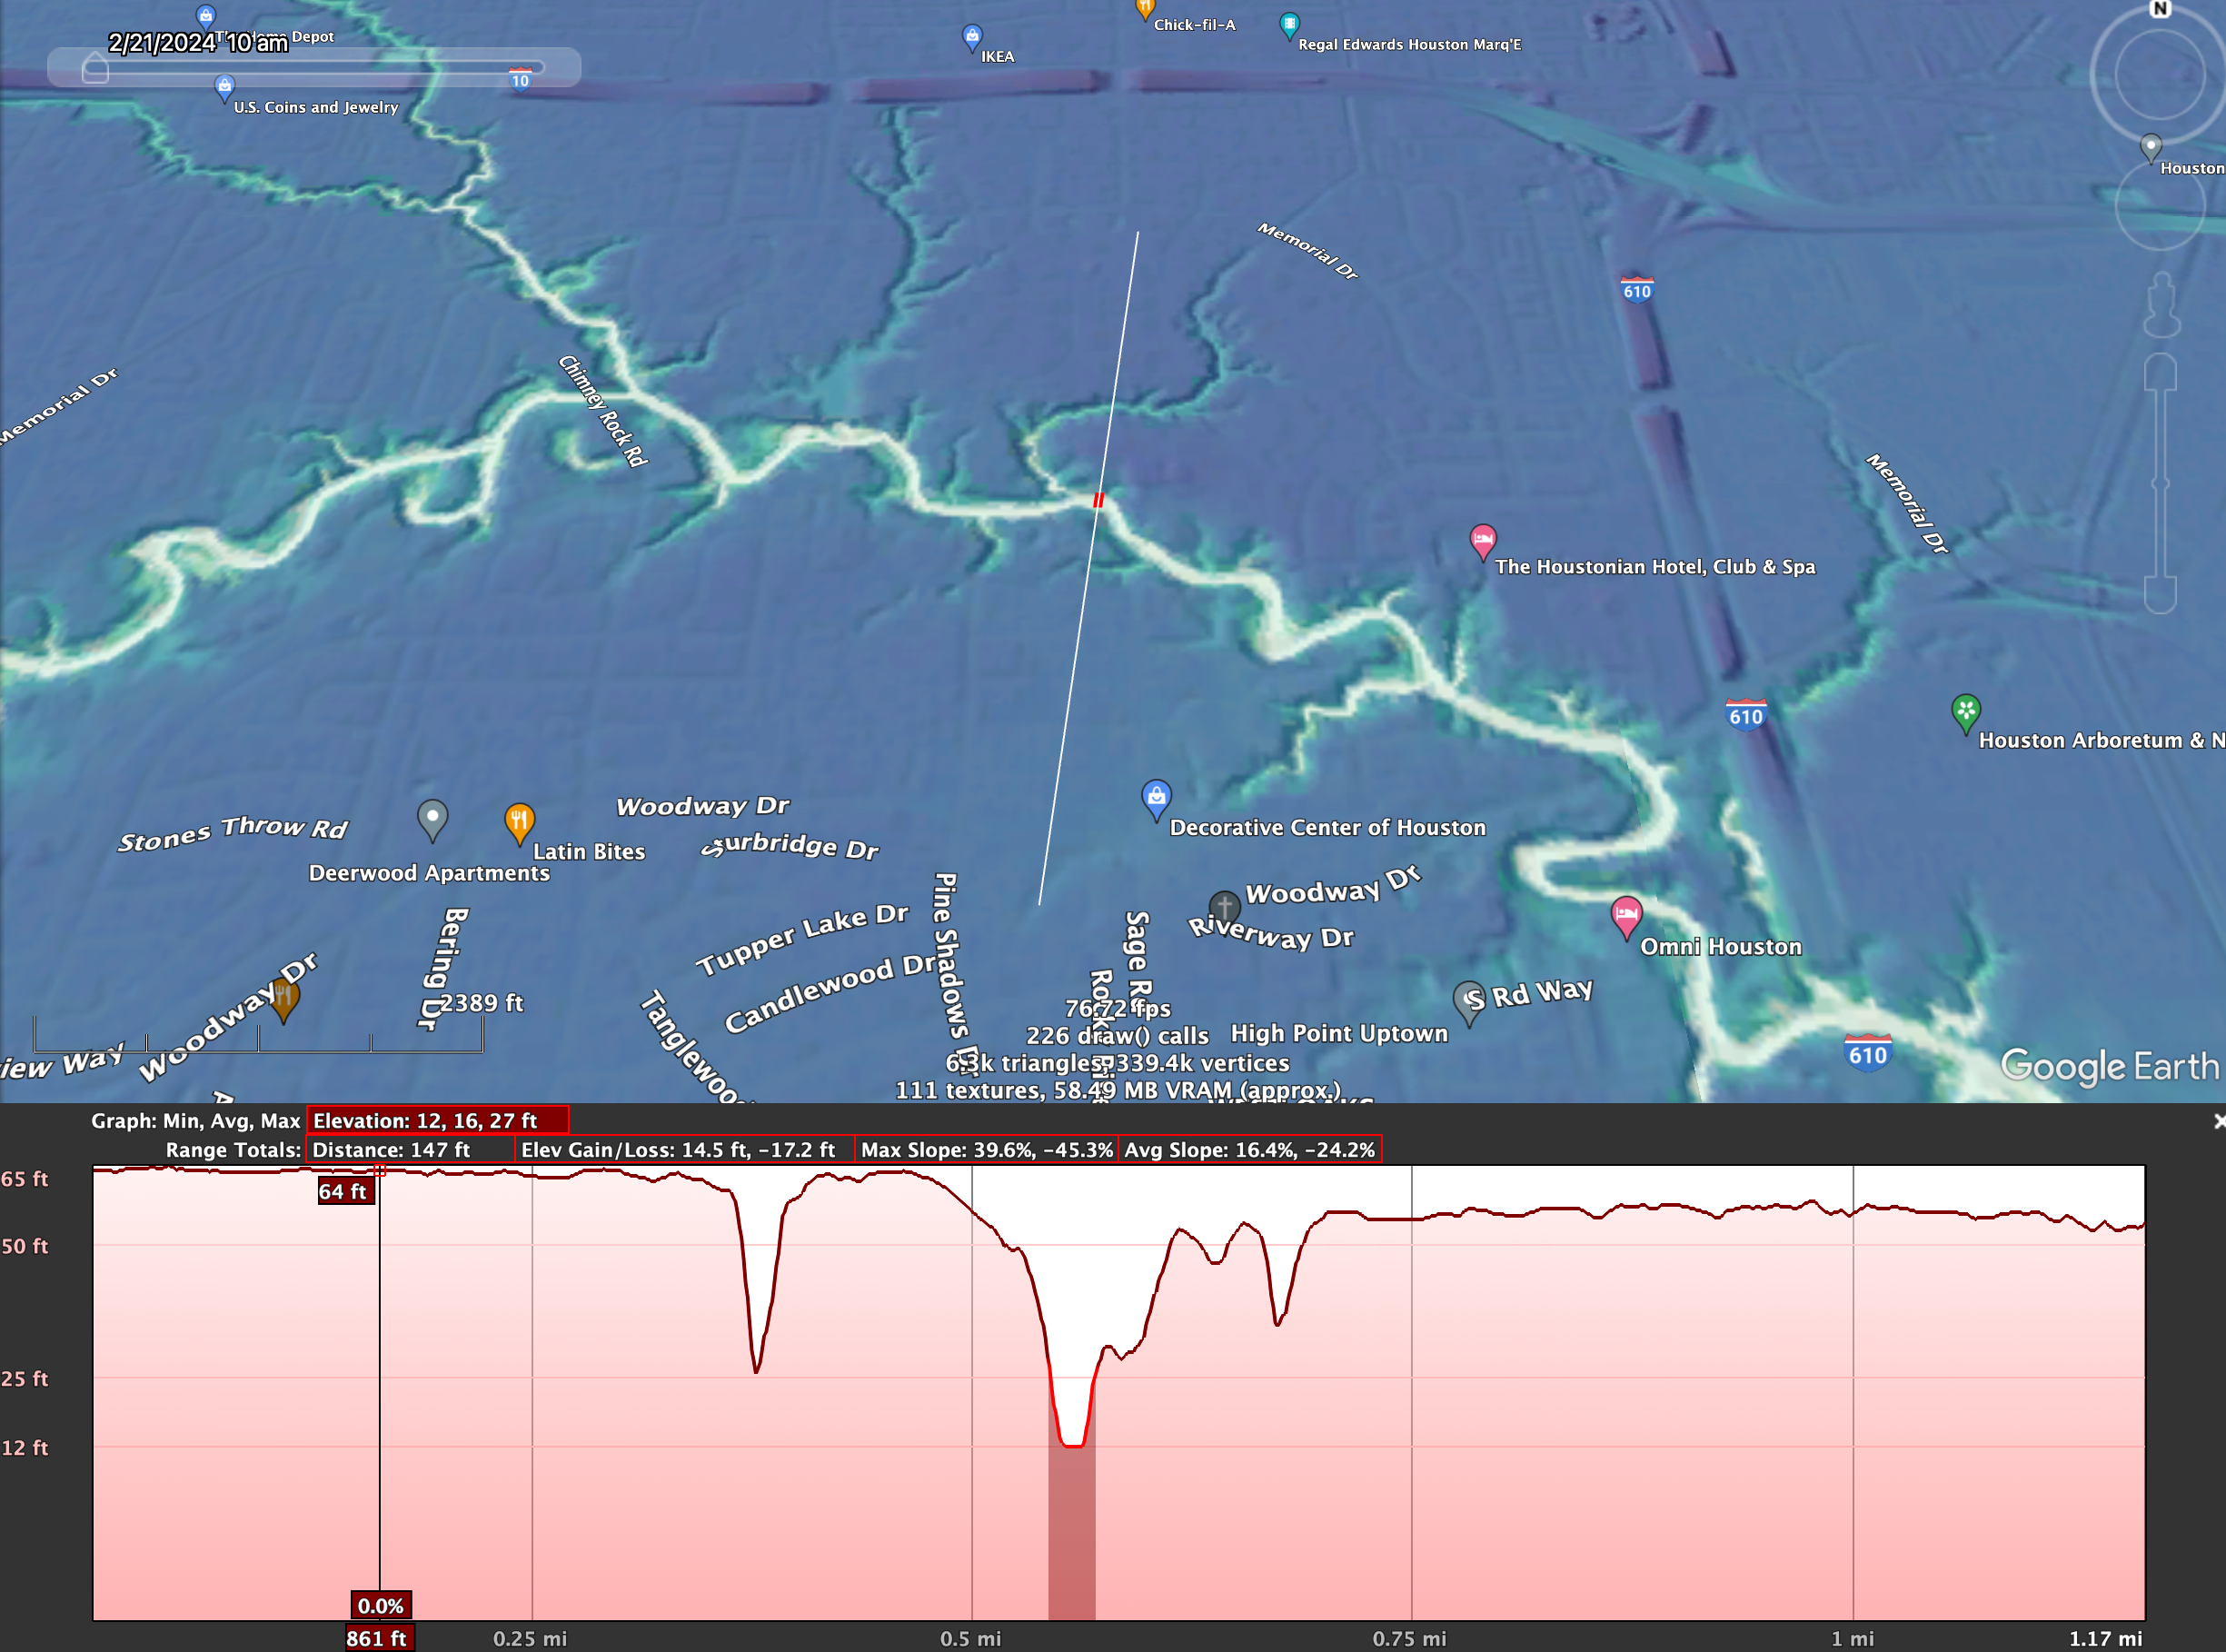 Relative Elevation Model image of Buffalo Bayou with elevation profile